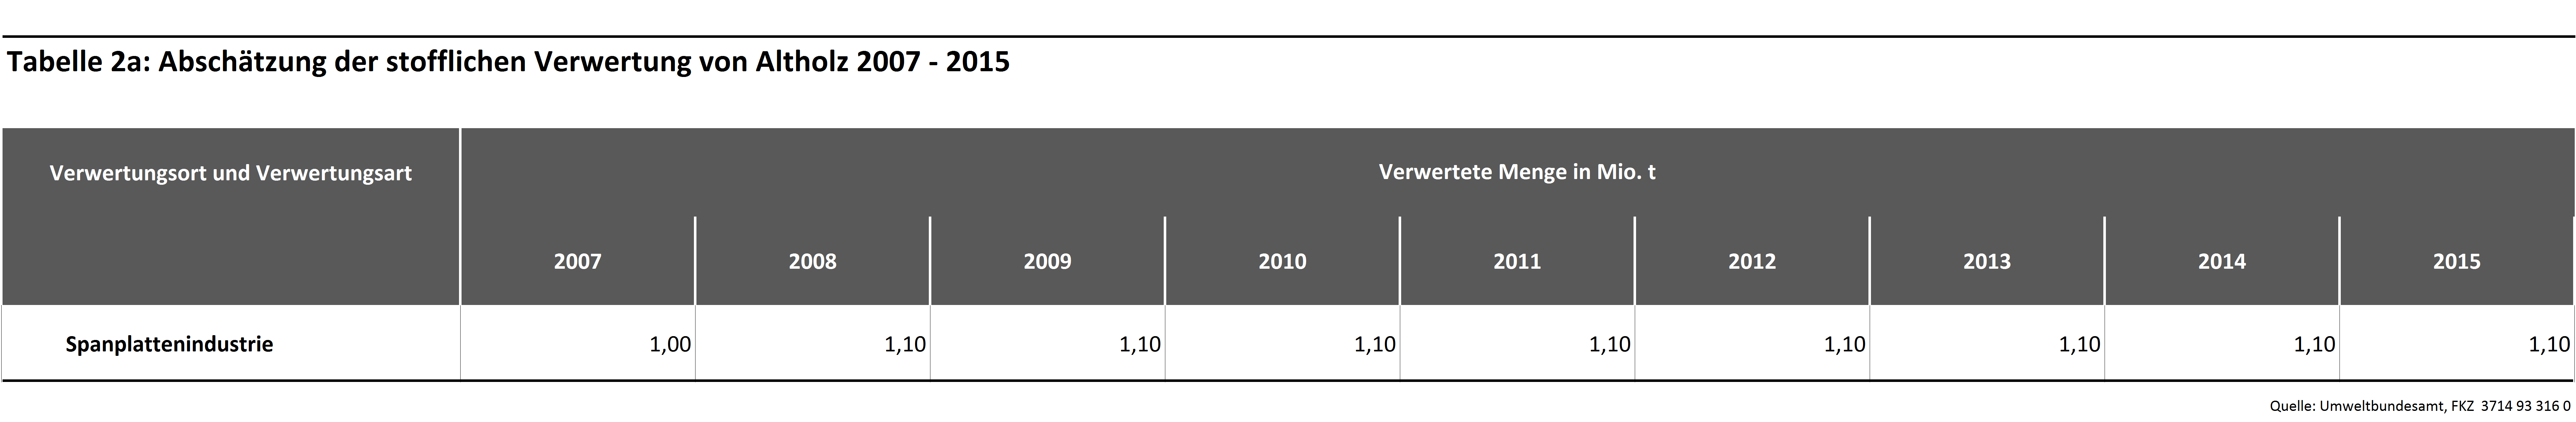 Tabelle 2a: Abschätzung der stofflichen Verwertung von Altholz 2007 - 2015